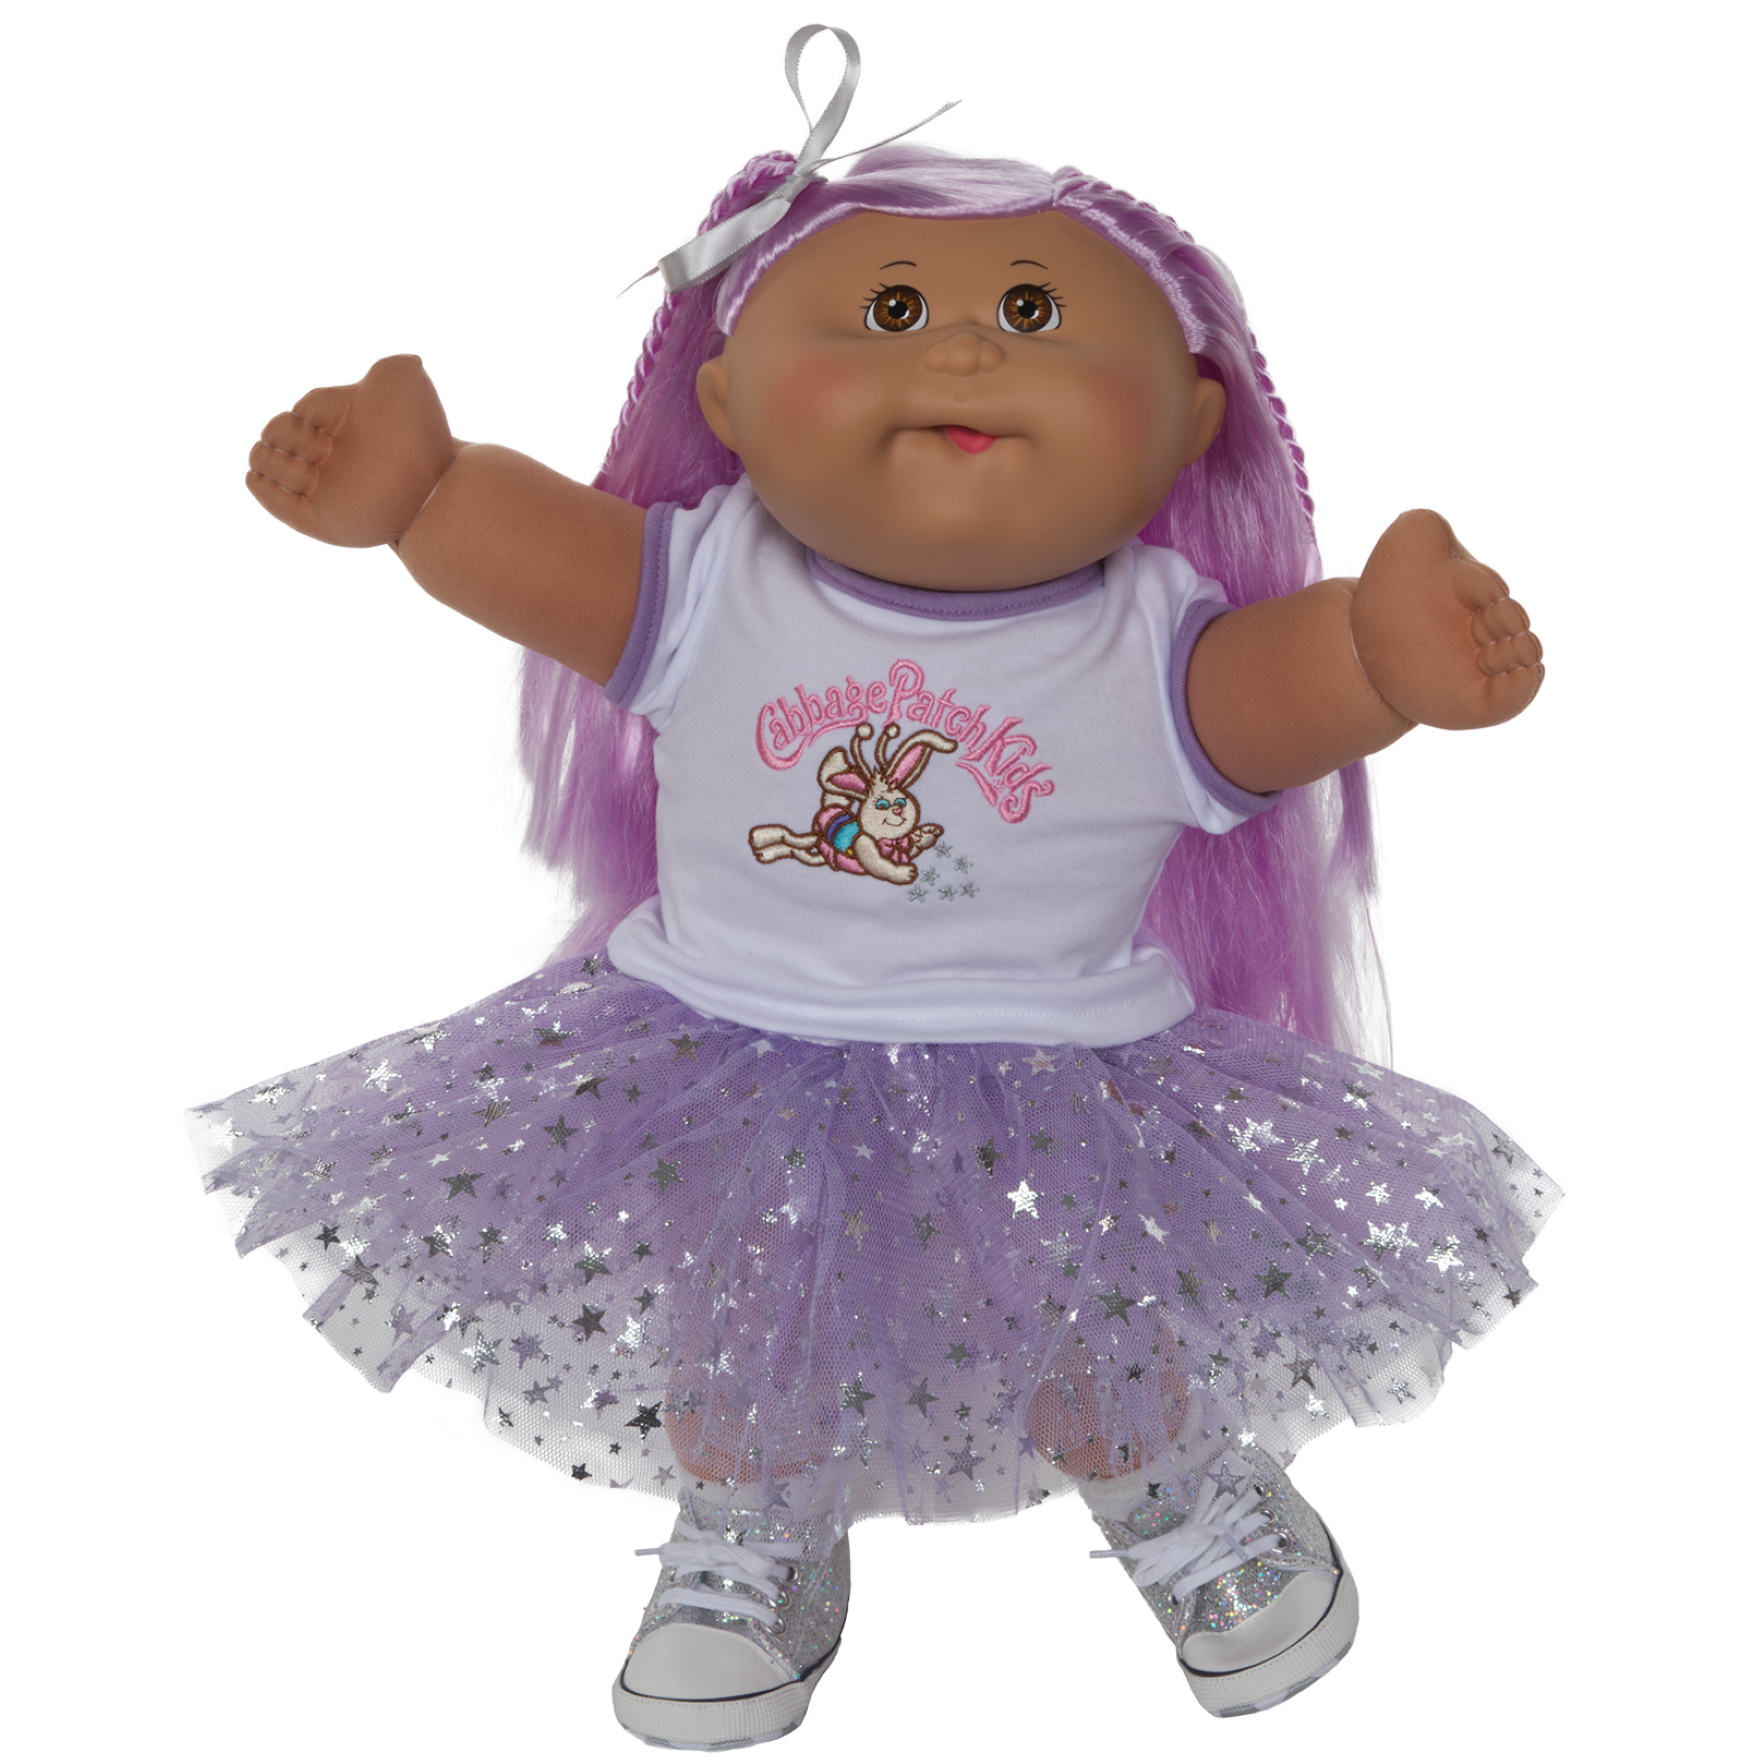 CPW0970-Purple BunnyBee Tutu Outfit